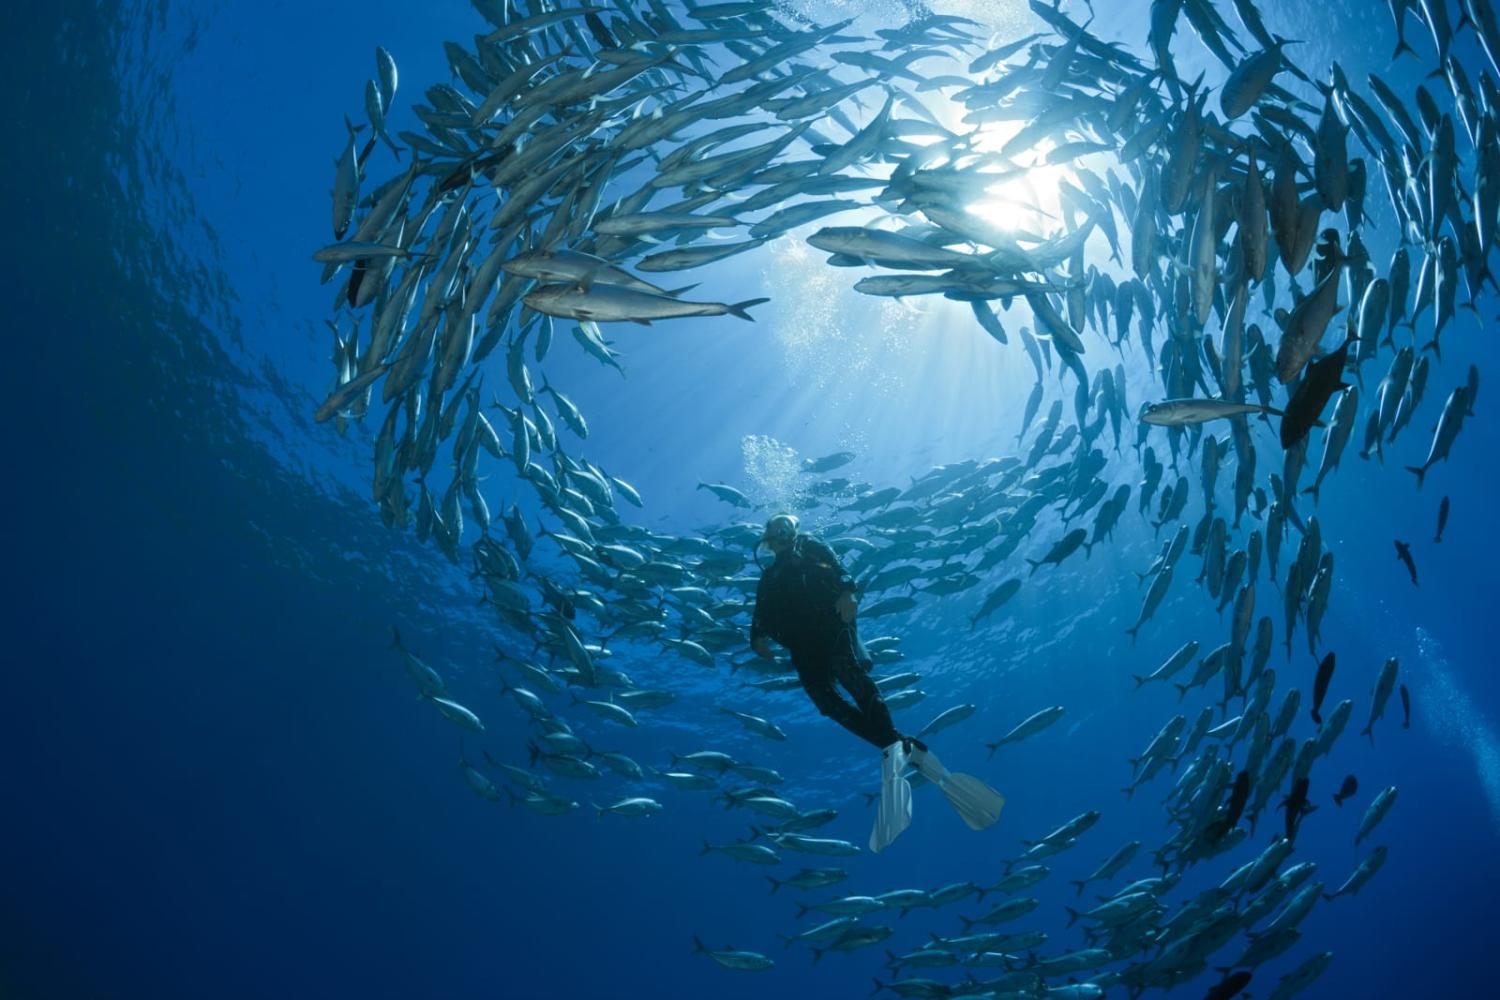 Fish know no sovereign boundaries (Reinhard Dirscherl via Getty Images)